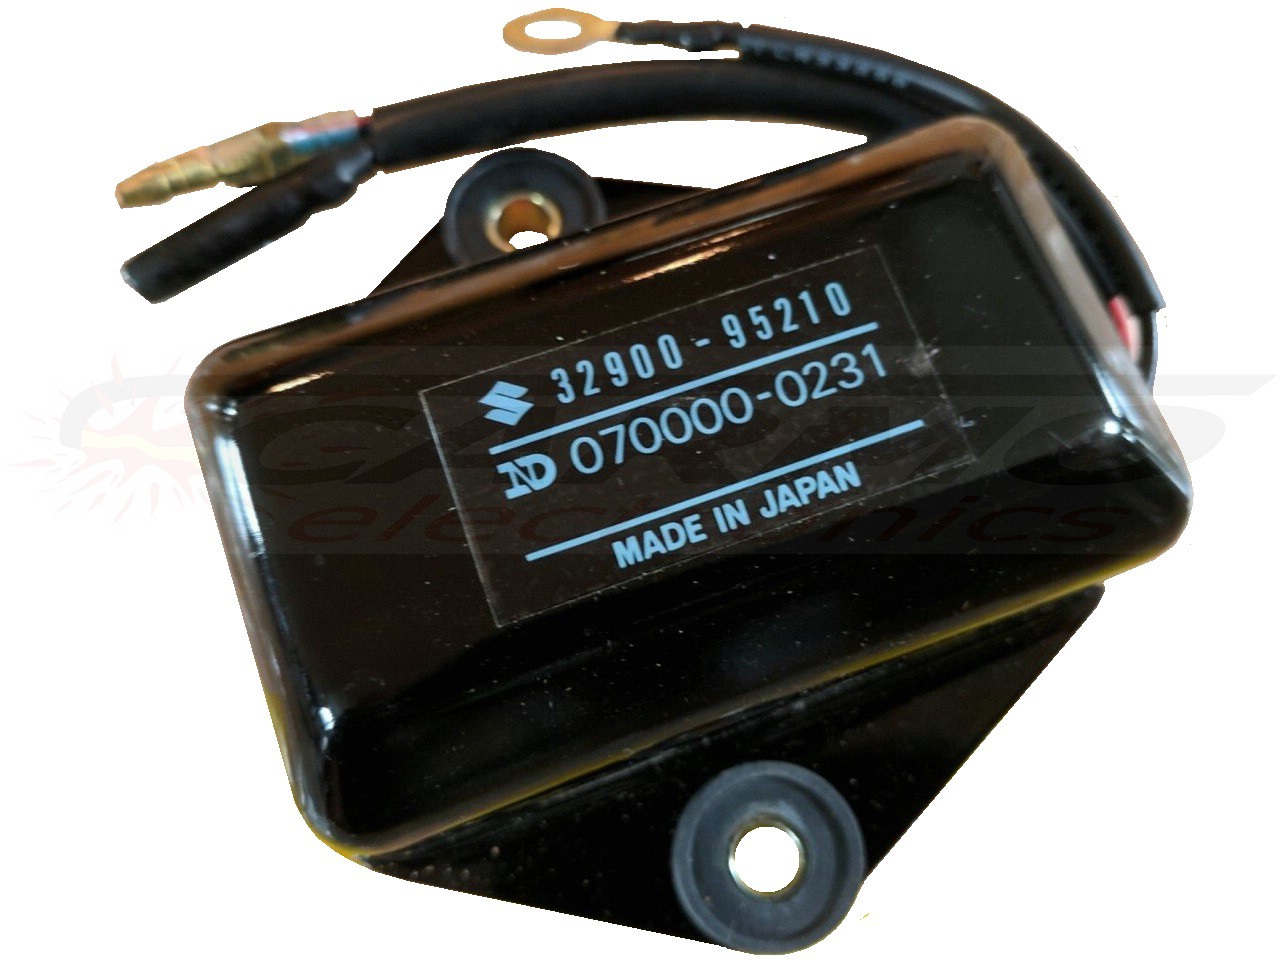 DT20 - DT65 ignição / módulo de ignição (32900-95210, 070000-0231)